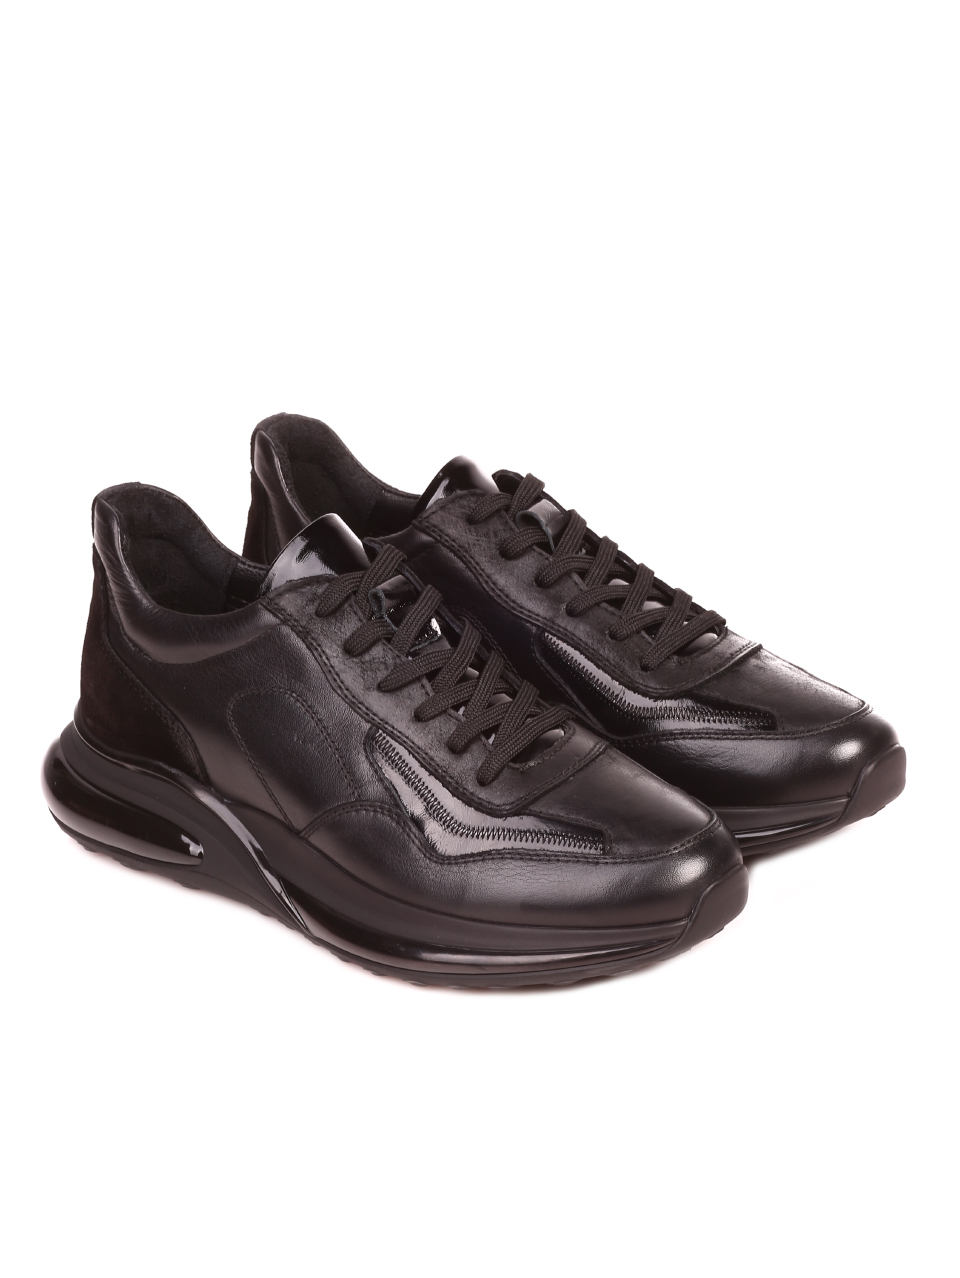 жедневни мъжки обувки от естествена кожа и естествен велур 7AT-21860 black